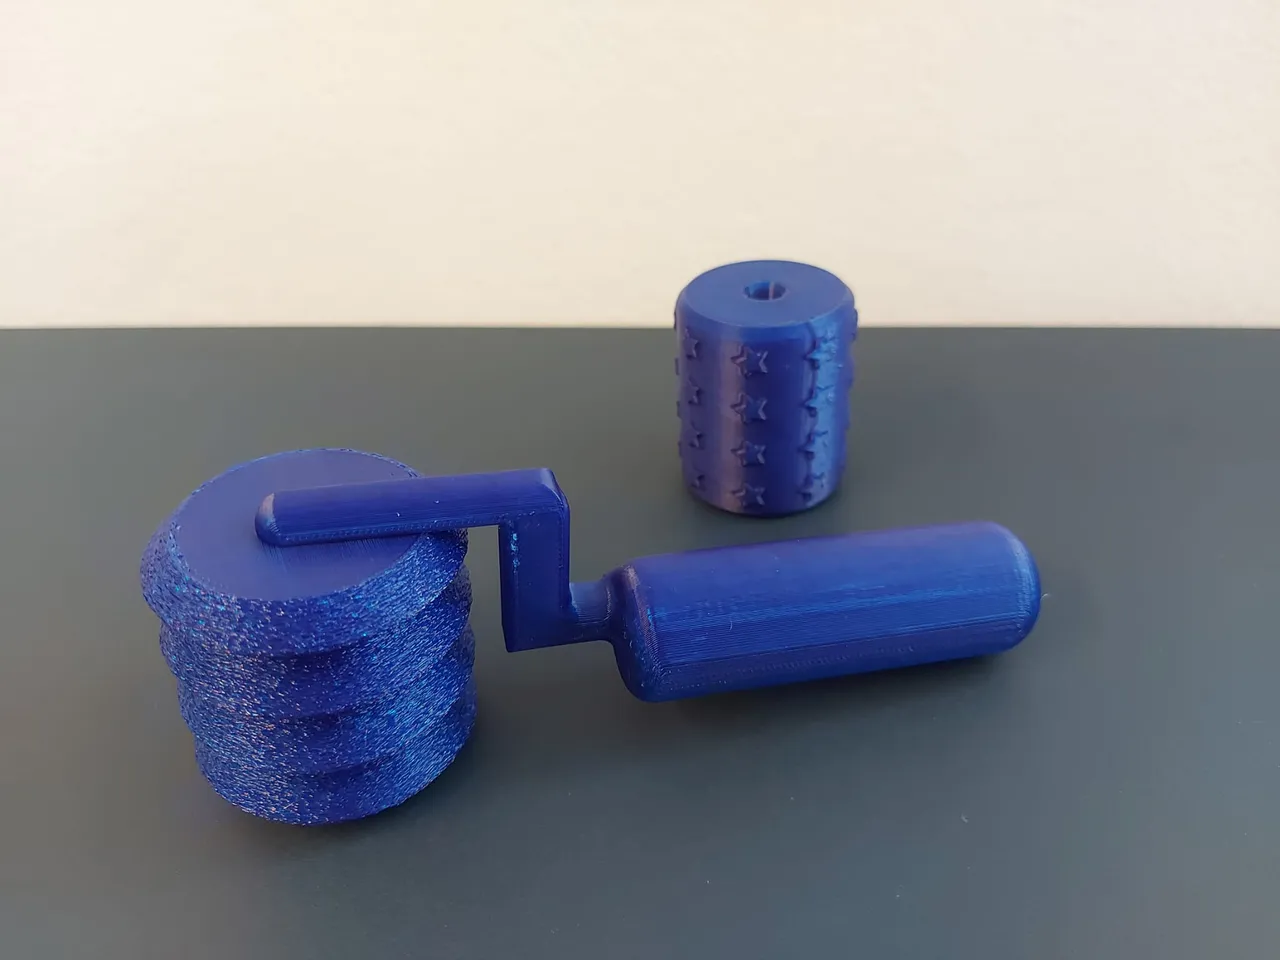 Plasticine Model Playdough Tools Set for Kids 3D Syringe Roller